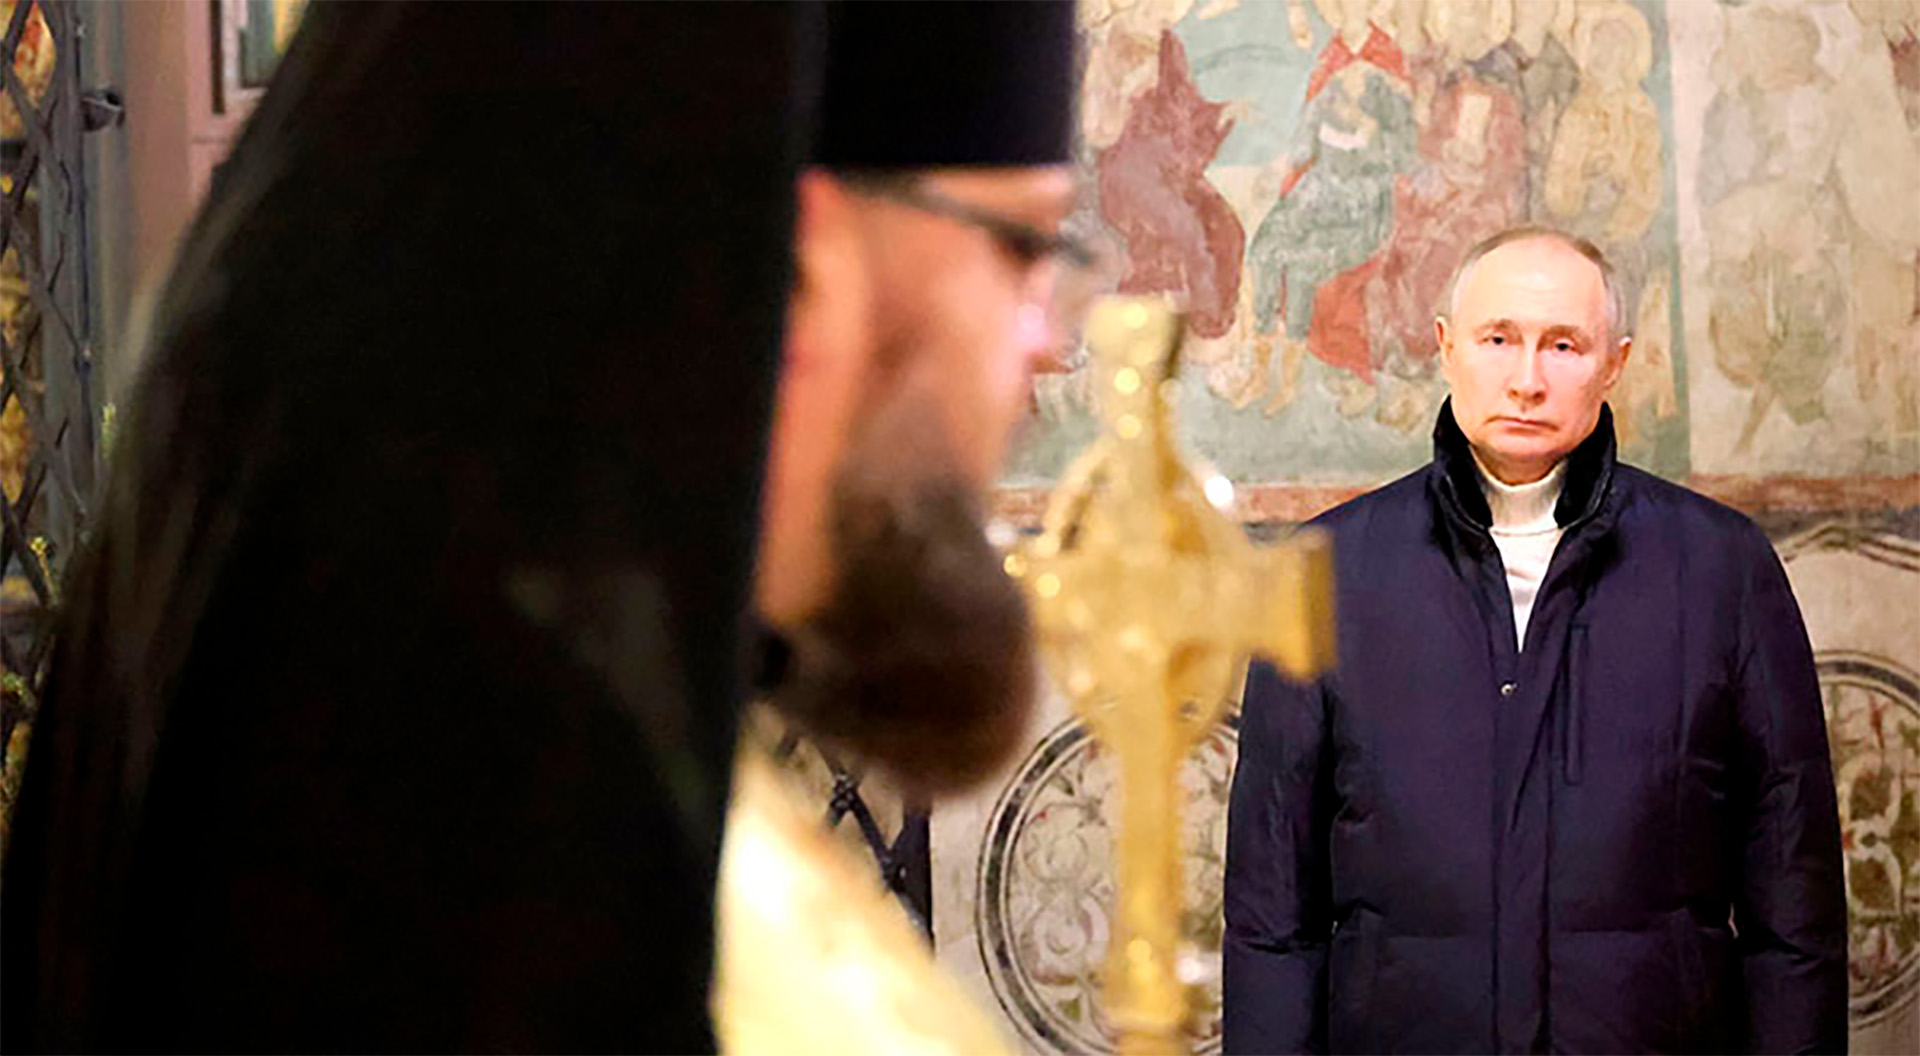 La relación de Putin con la Iglesia Ortodoxa rusa es muy estrecha. Las sagradas escrituras son siempre mencionadas en sus discursos.